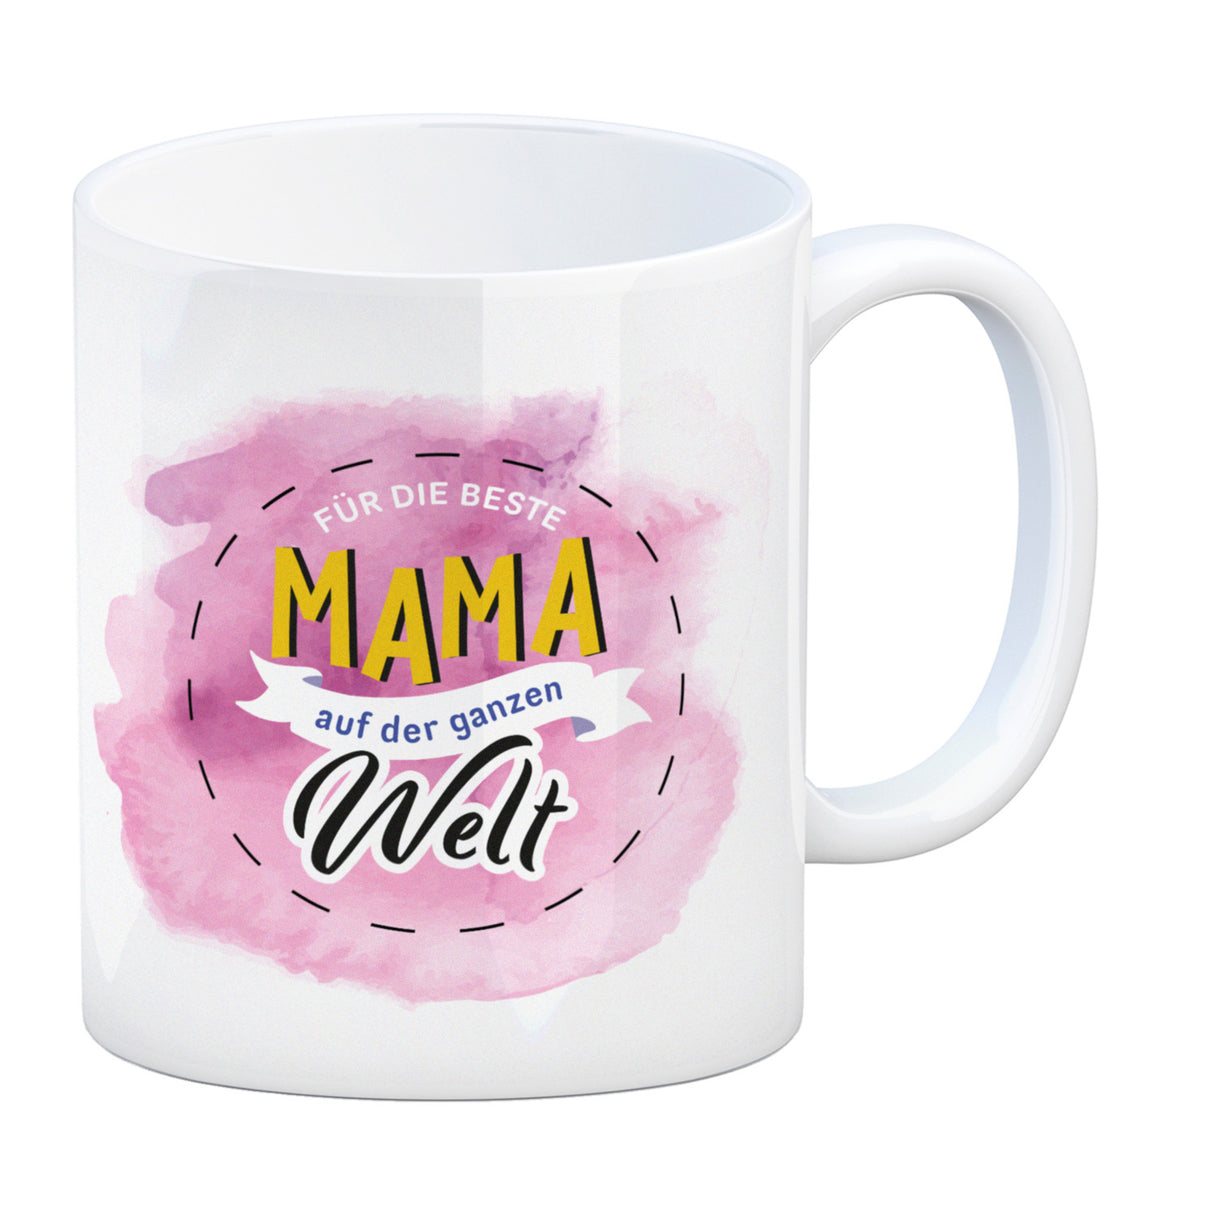 Für die beste Mama Kaffeebecher mit Wasserfarbenmotiv